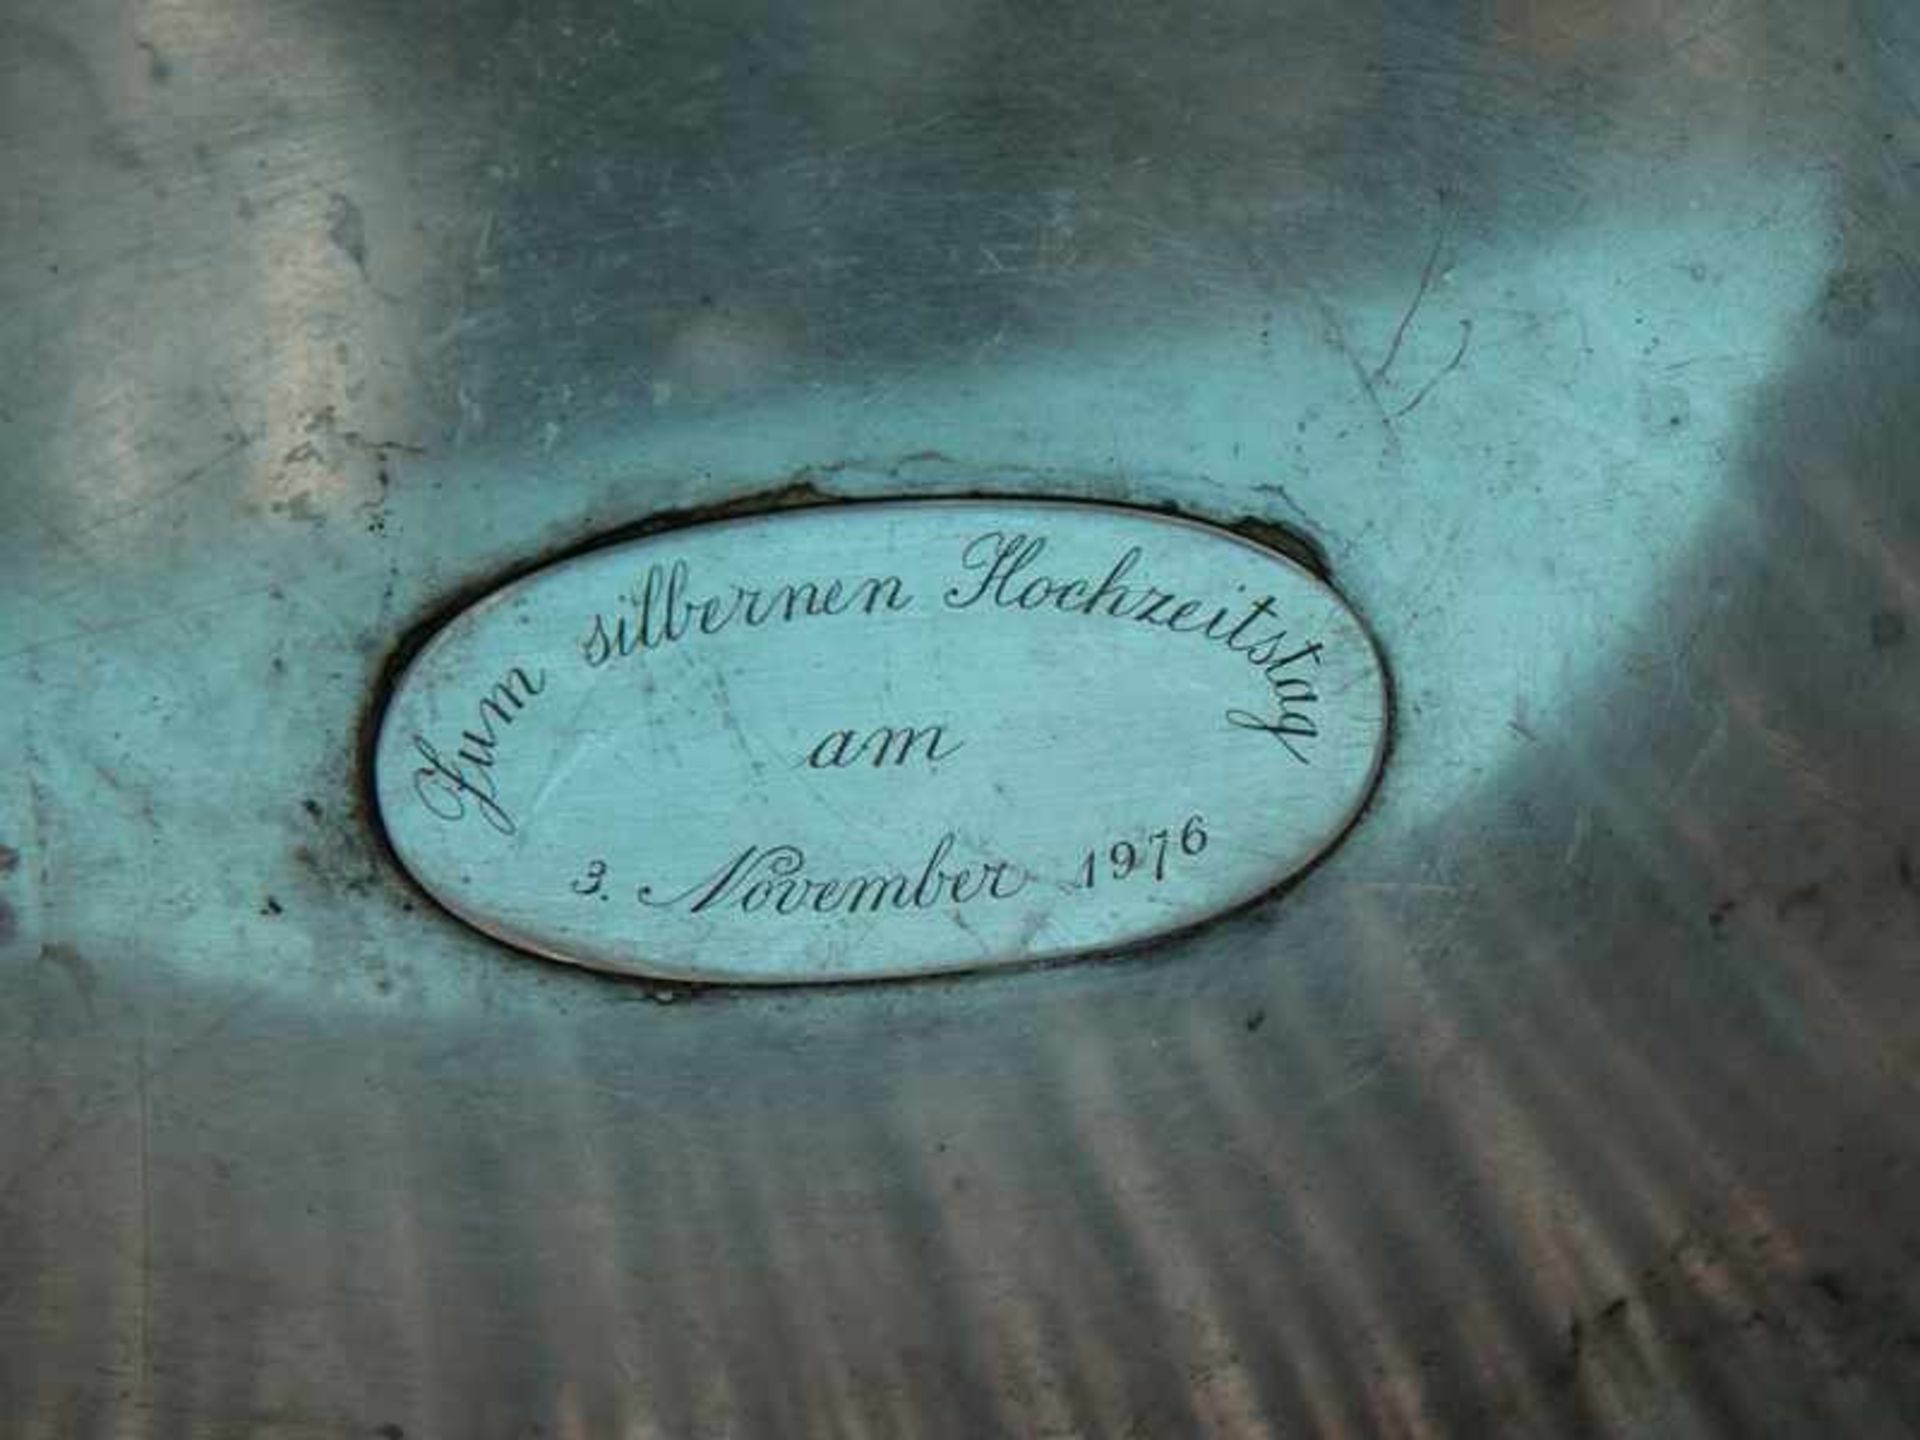 Großer Sektkühler, Buccelati, Mailand, Italien, 20. Jh. 925/-Silber, ca. 2055 g. Ovale Form mit - Bild 5 aus 6